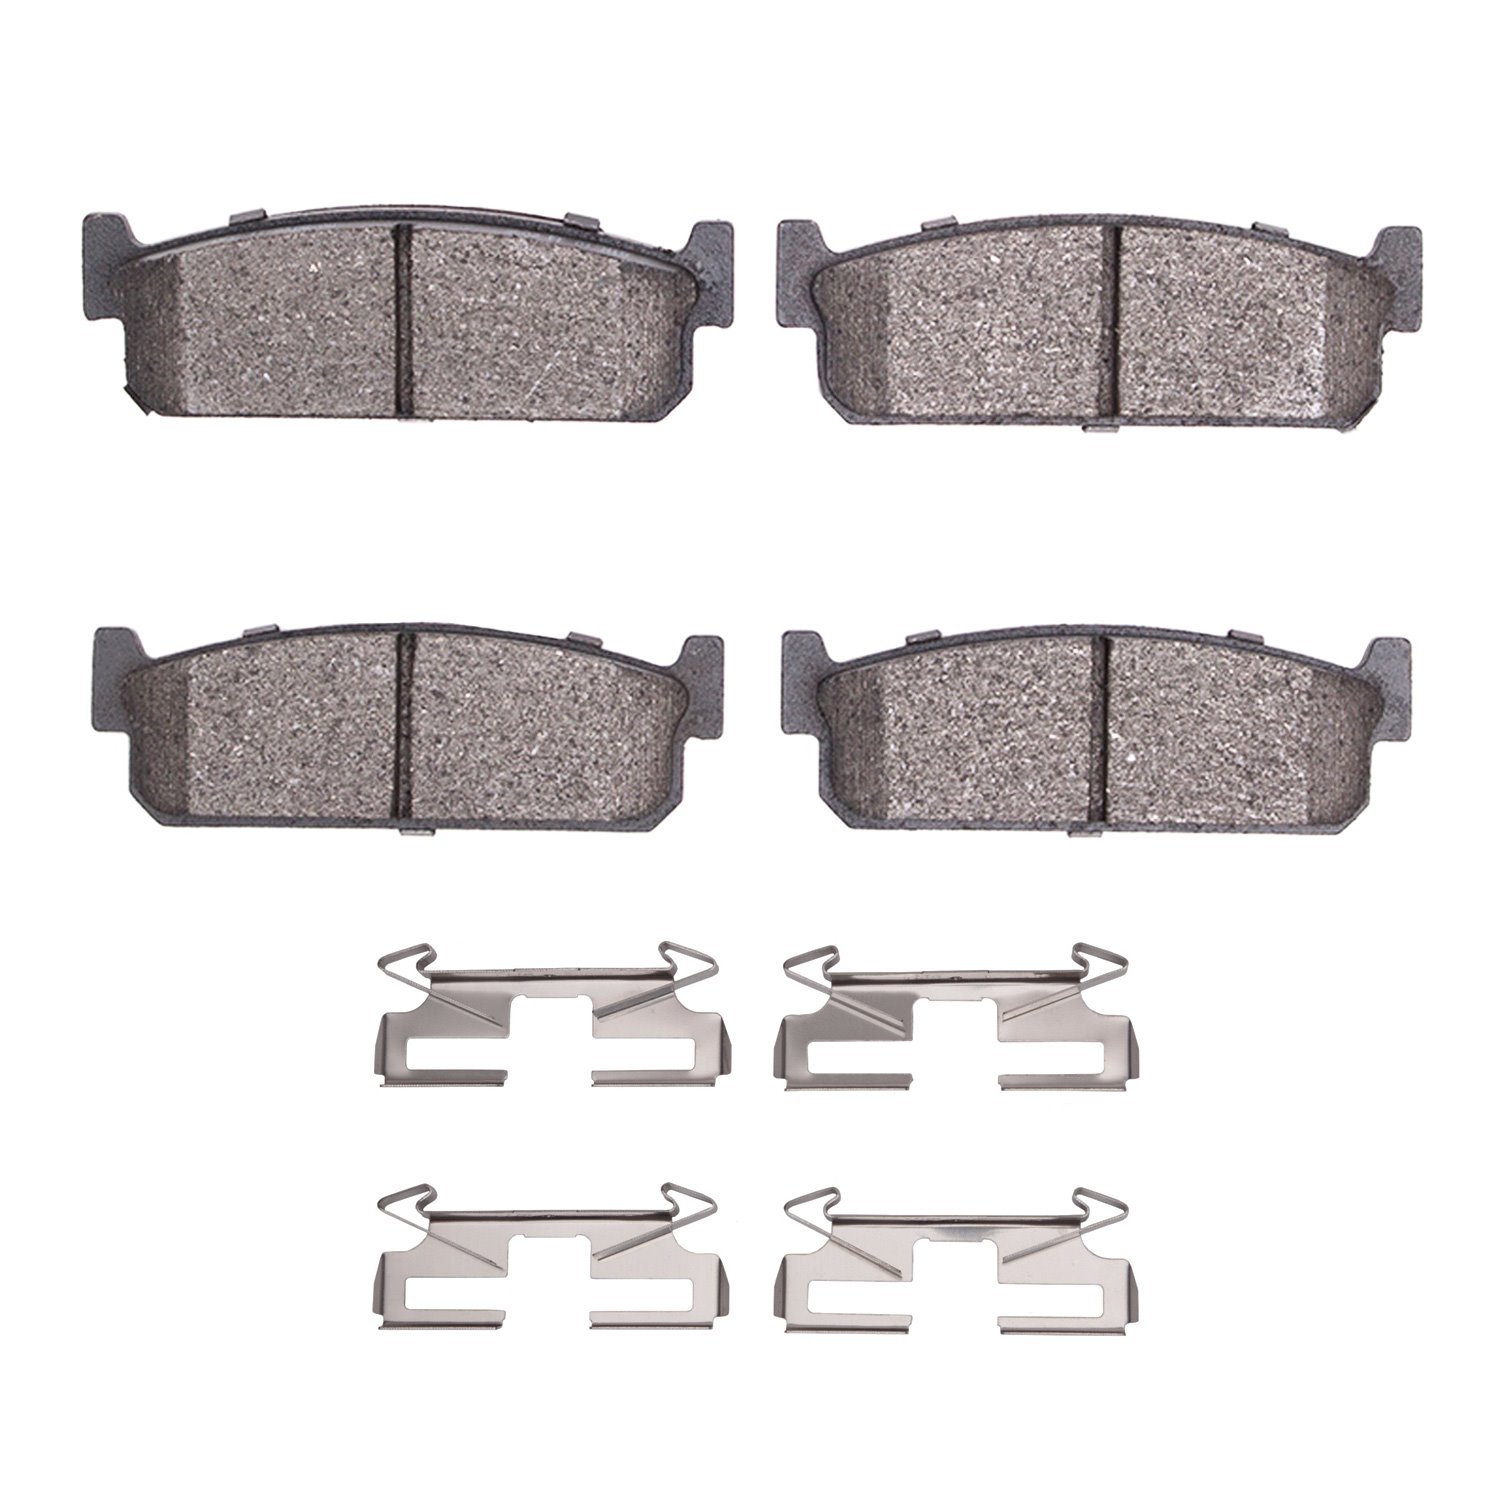 1310-0588-02 3000-Series Ceramic Brake Pads & Hardware Kit, 1994-1996 Infiniti/Nissan, Position: Rear